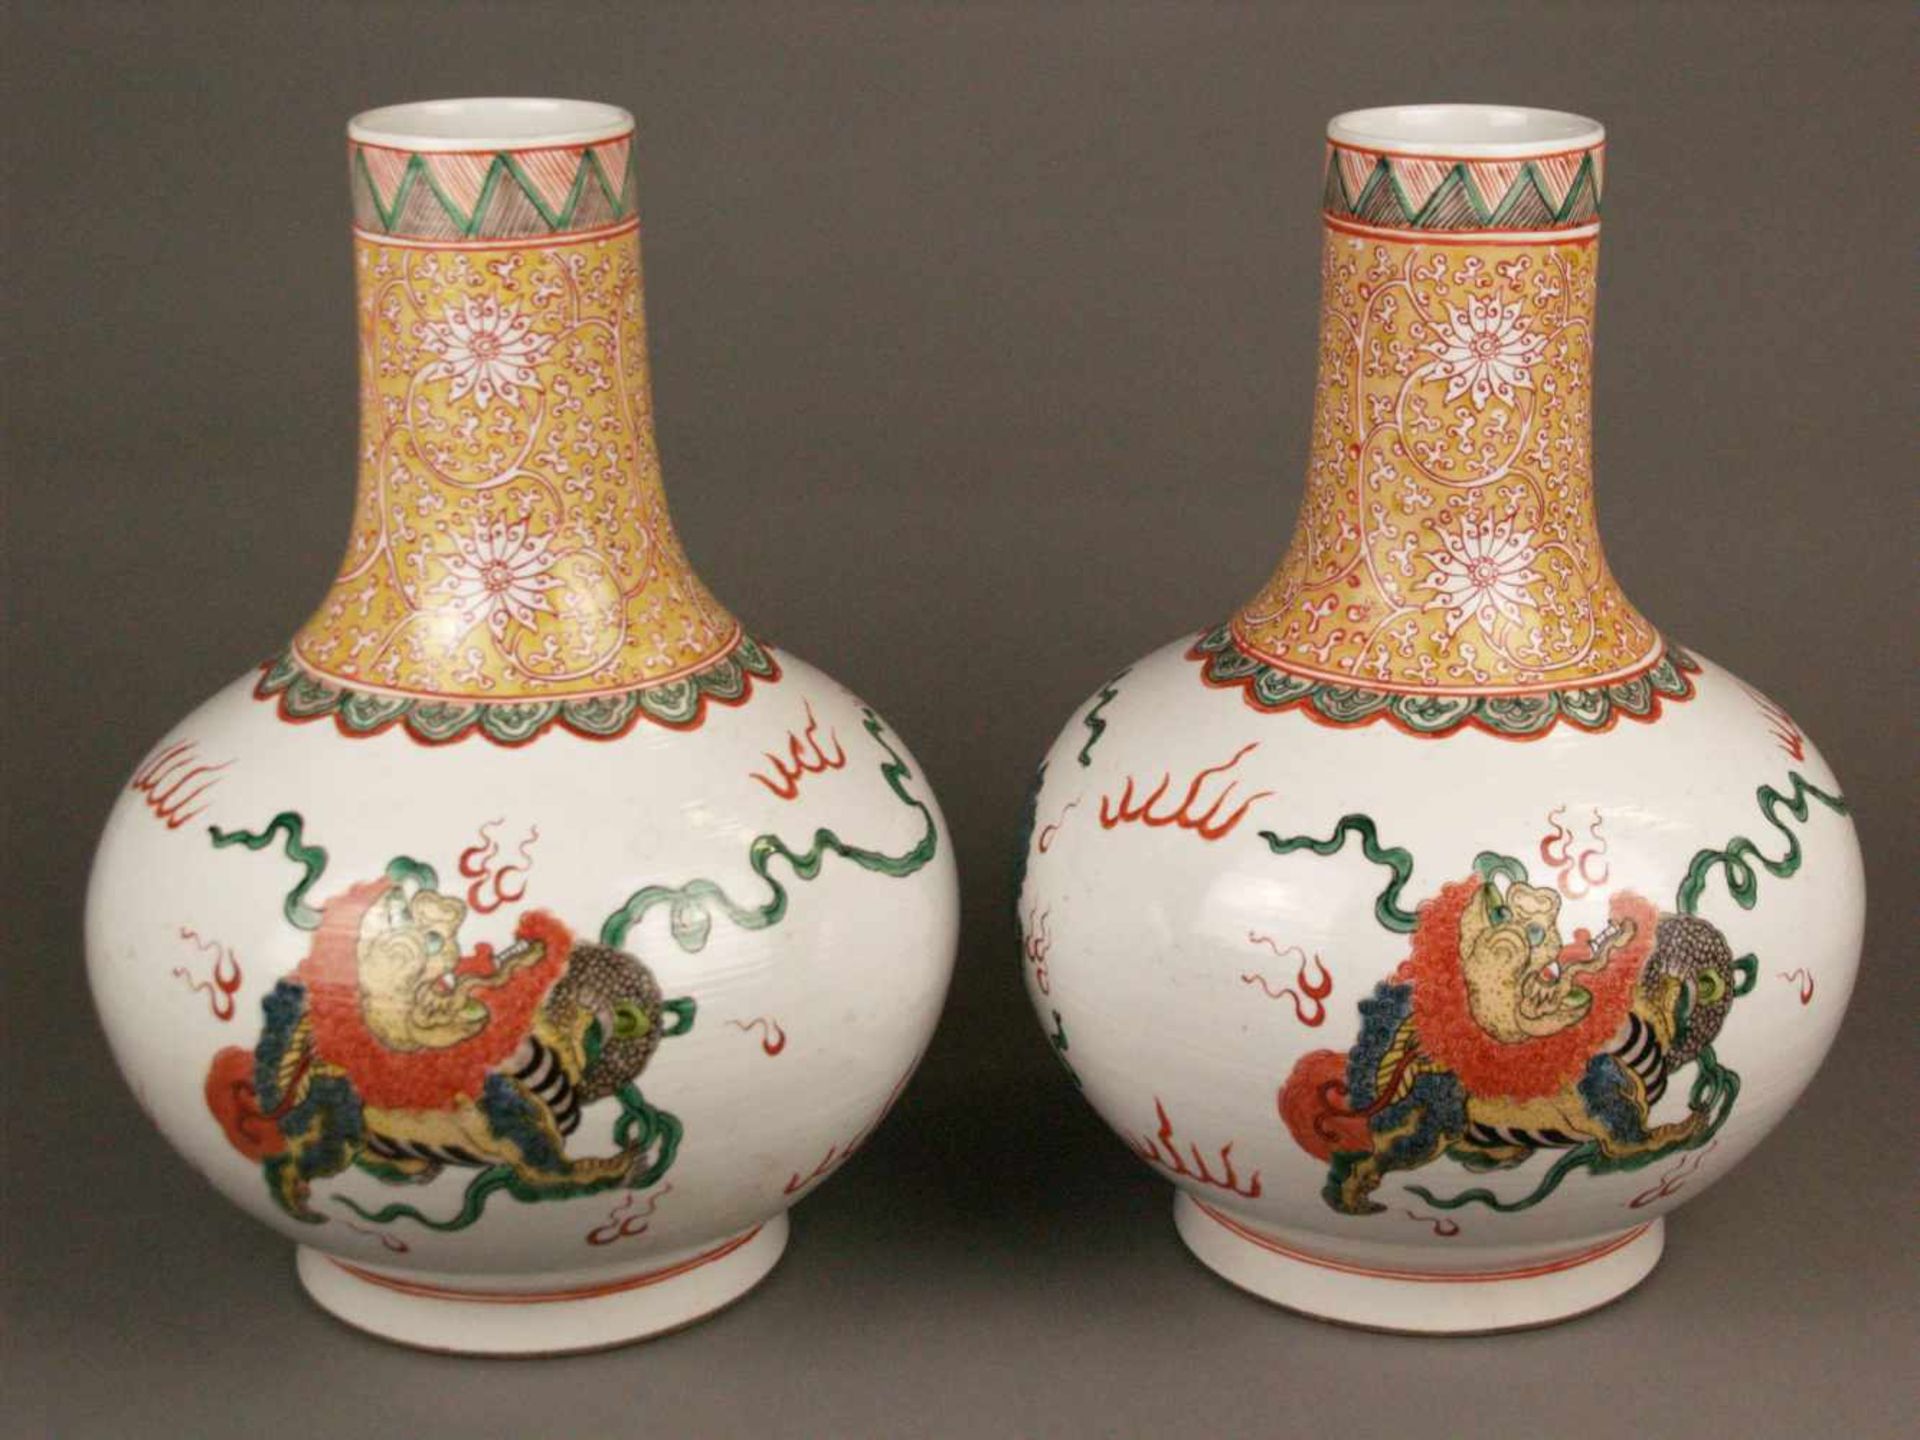 Paar Vasen - China, 20. Jh., Porzellan, Typus "Tian Qiu Ping", bauchiger Korpus mit Rundfuß und